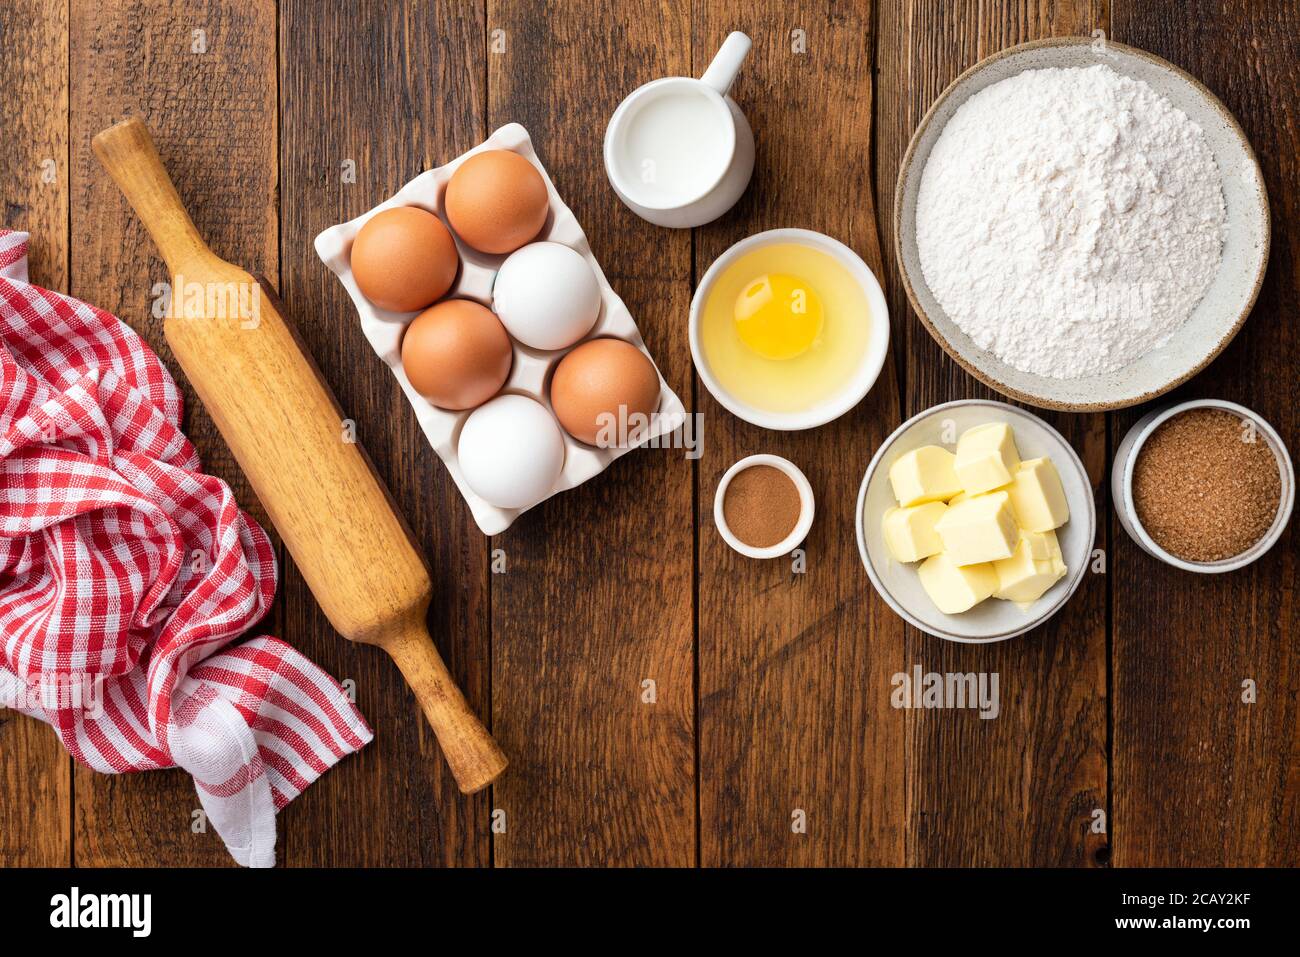 Cuisson des ingrédients sur une table en bois. Farine beurre oeufs sucre et lait, ingrédients pour gâteaux ou pâtisseries sucrées. Plan d'étapage avec vue de dessus Banque D'Images